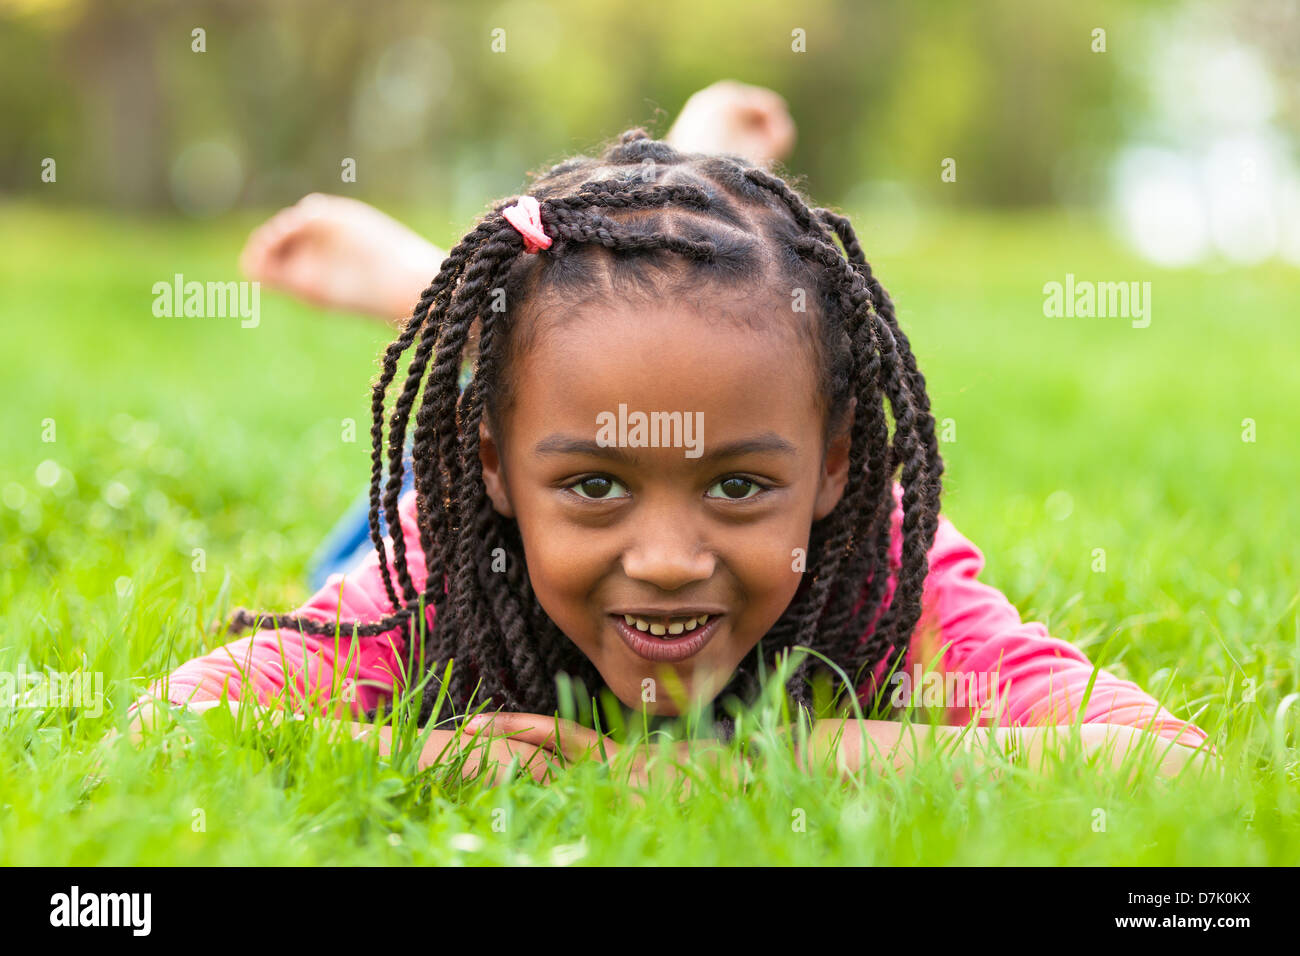 Outdoor portrait of a cute jeune fille noire couchée sur l'herbe et souriant - peuple africain Banque D'Images